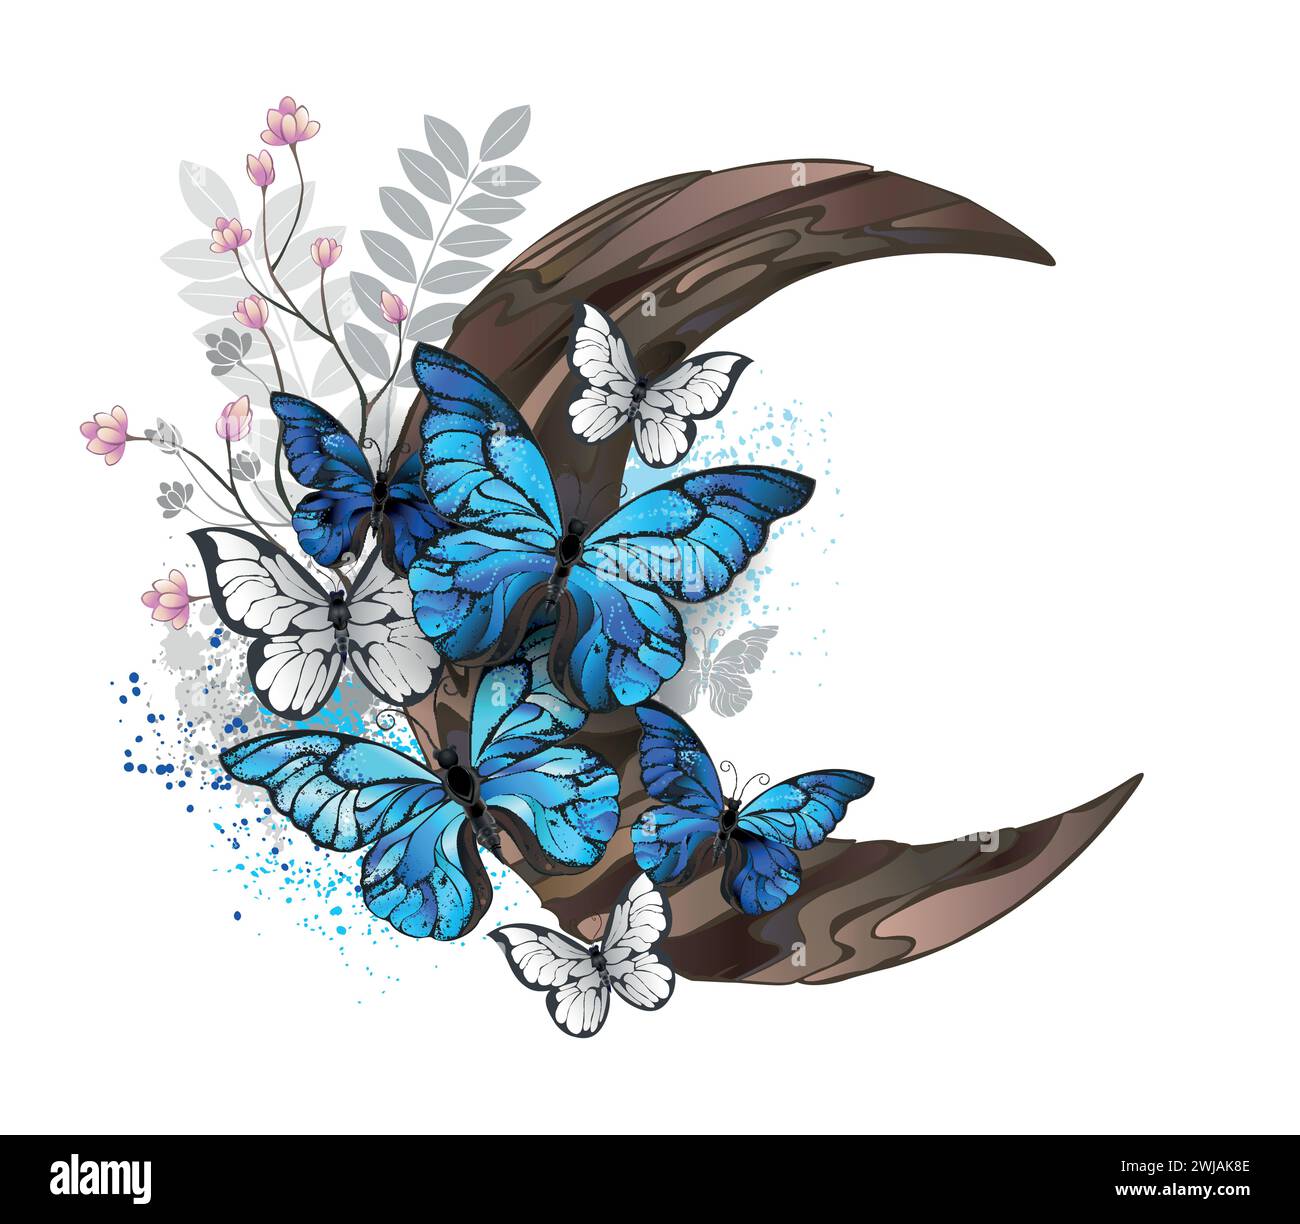 Papillons morpho bleus avec des ailes détaillées assis sur un croissant en bois décoré de plantes sauvages sur fond blanc. Papillons bleus morpho. Illustration de Vecteur